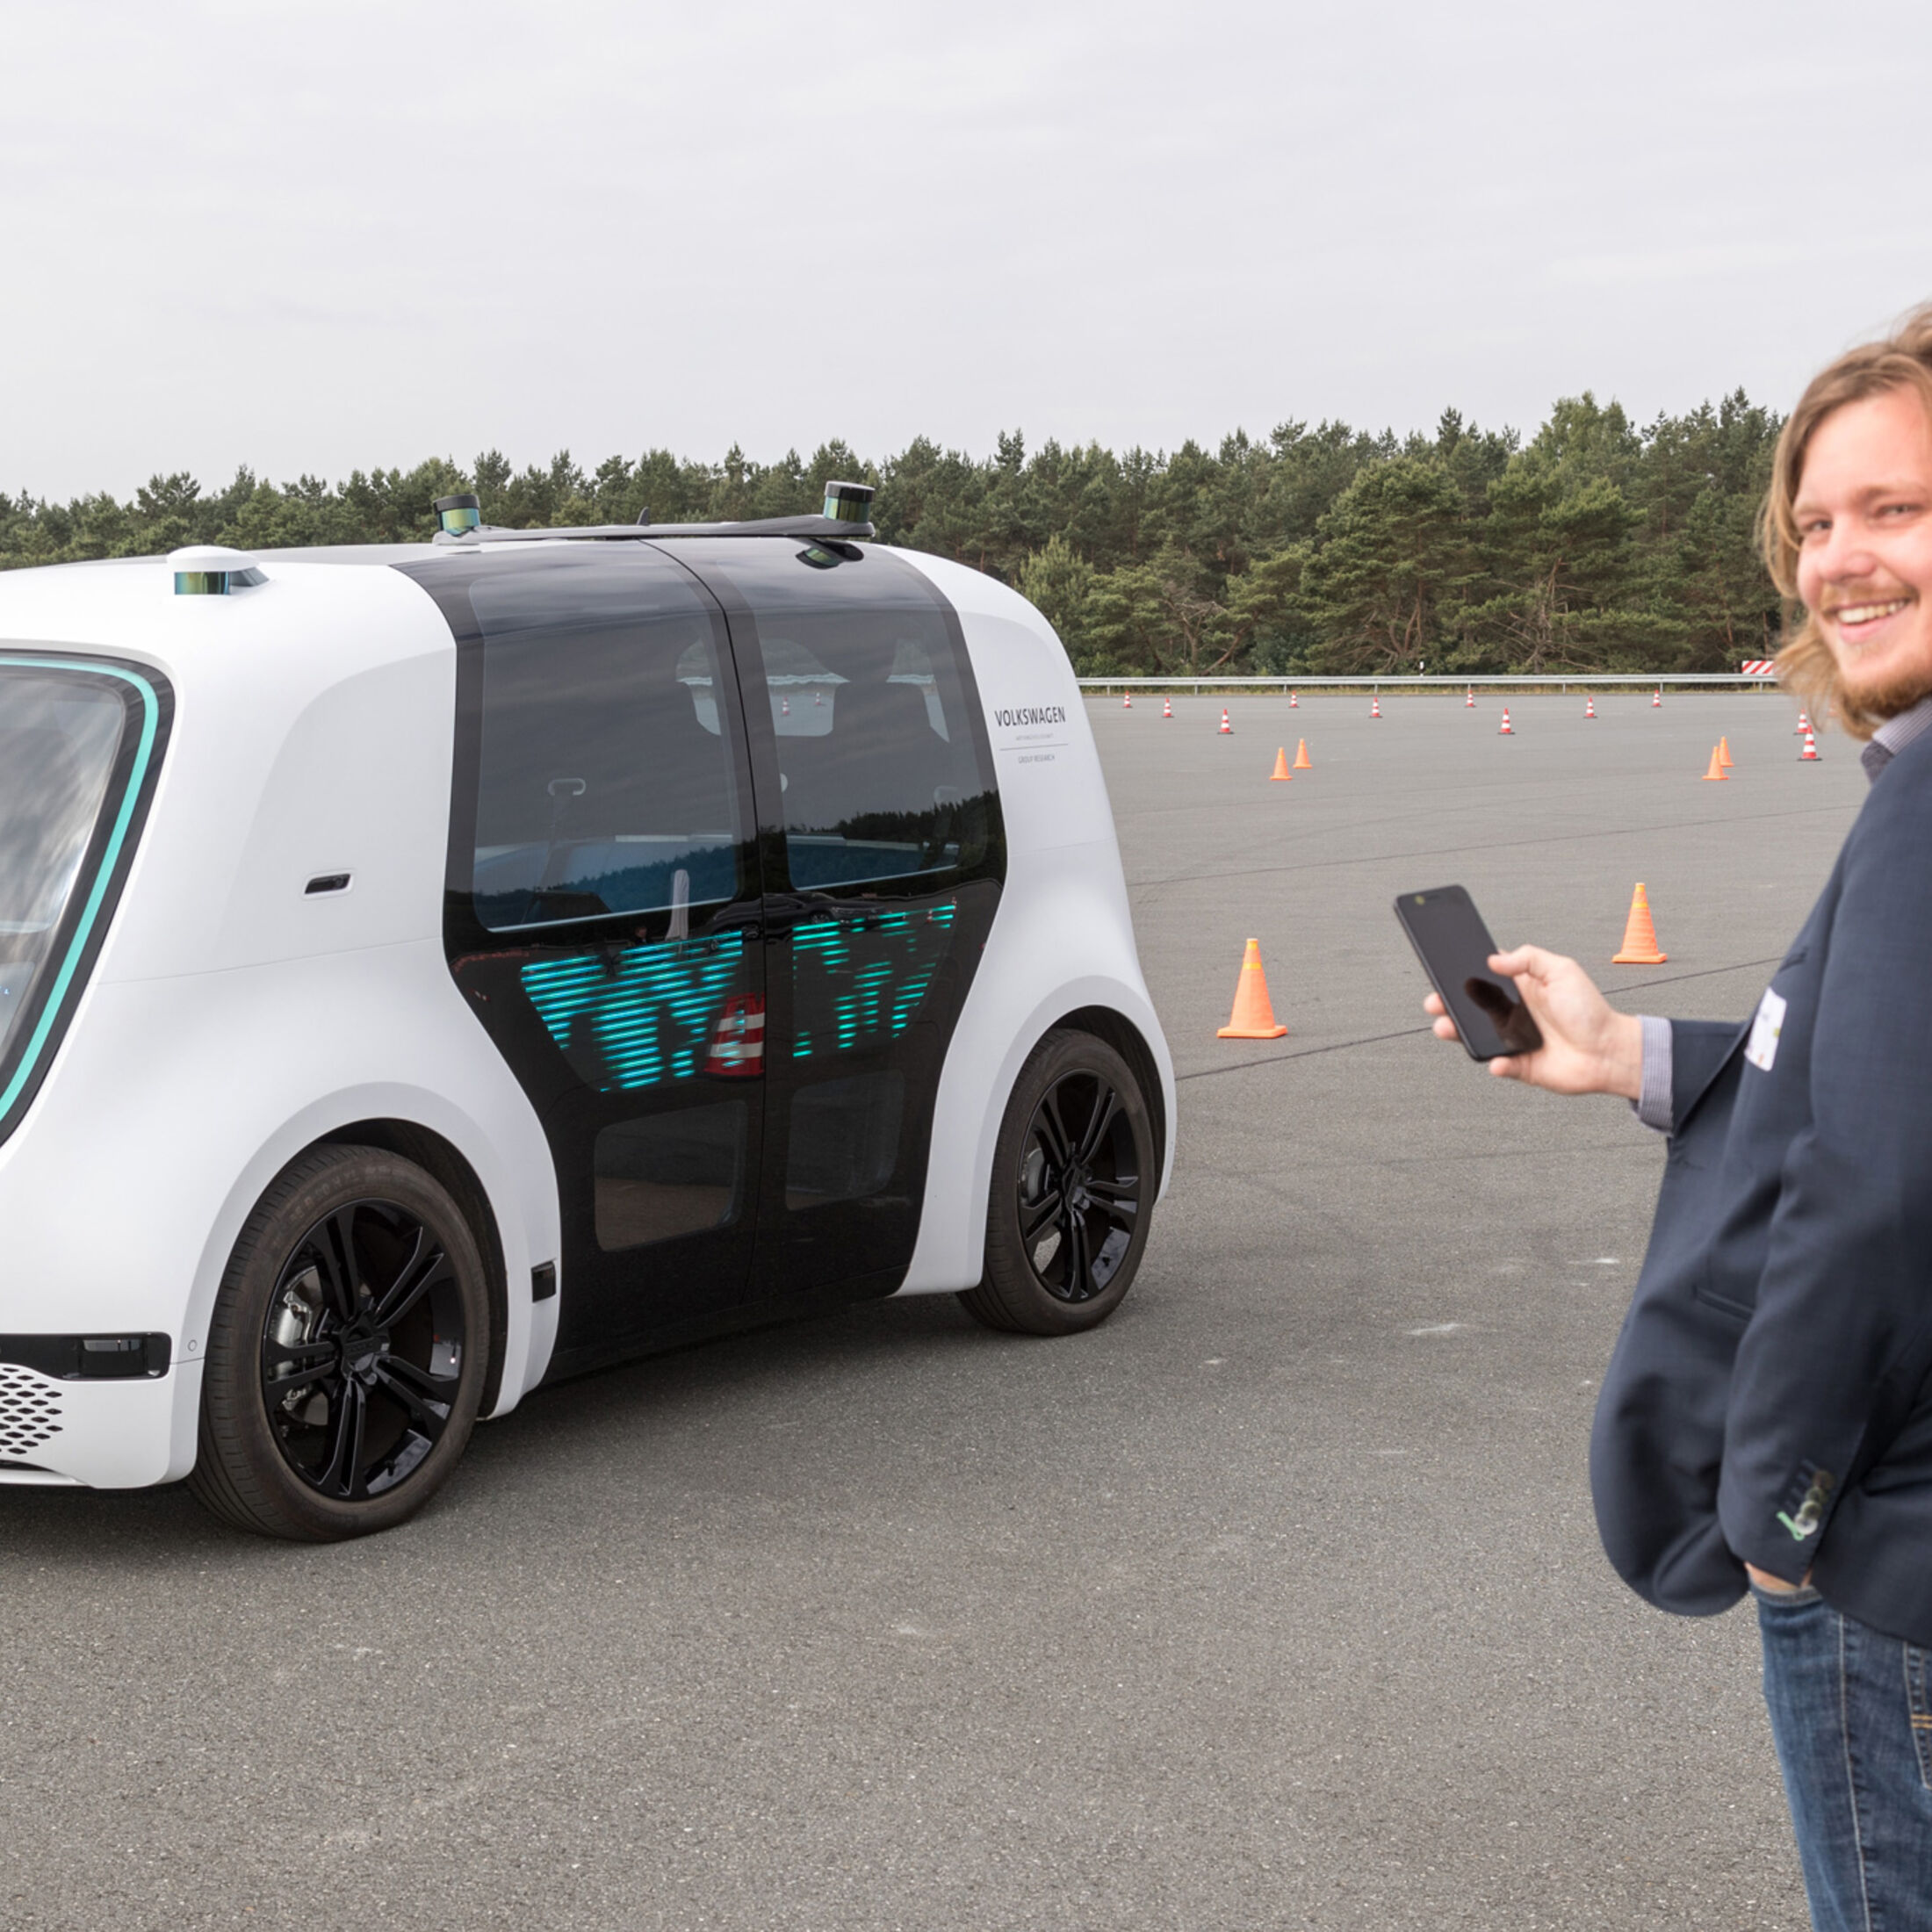 VW Sedric: Mitfahrt im autonomen Elektro-Auto